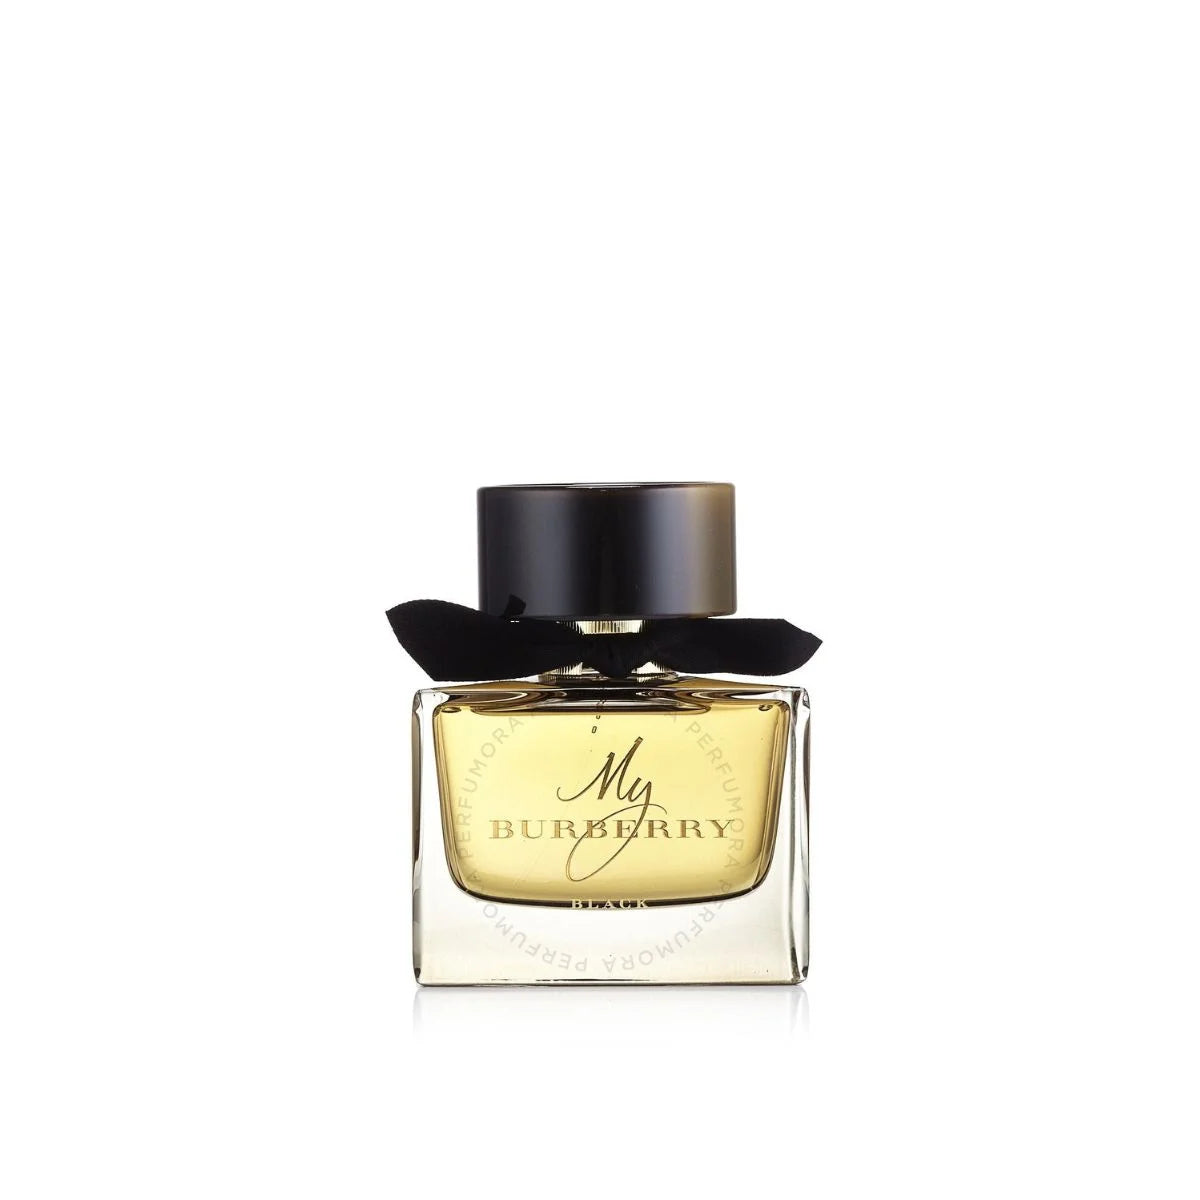 My Burberry Black Eau de Parfum Spray for Women by Burberry